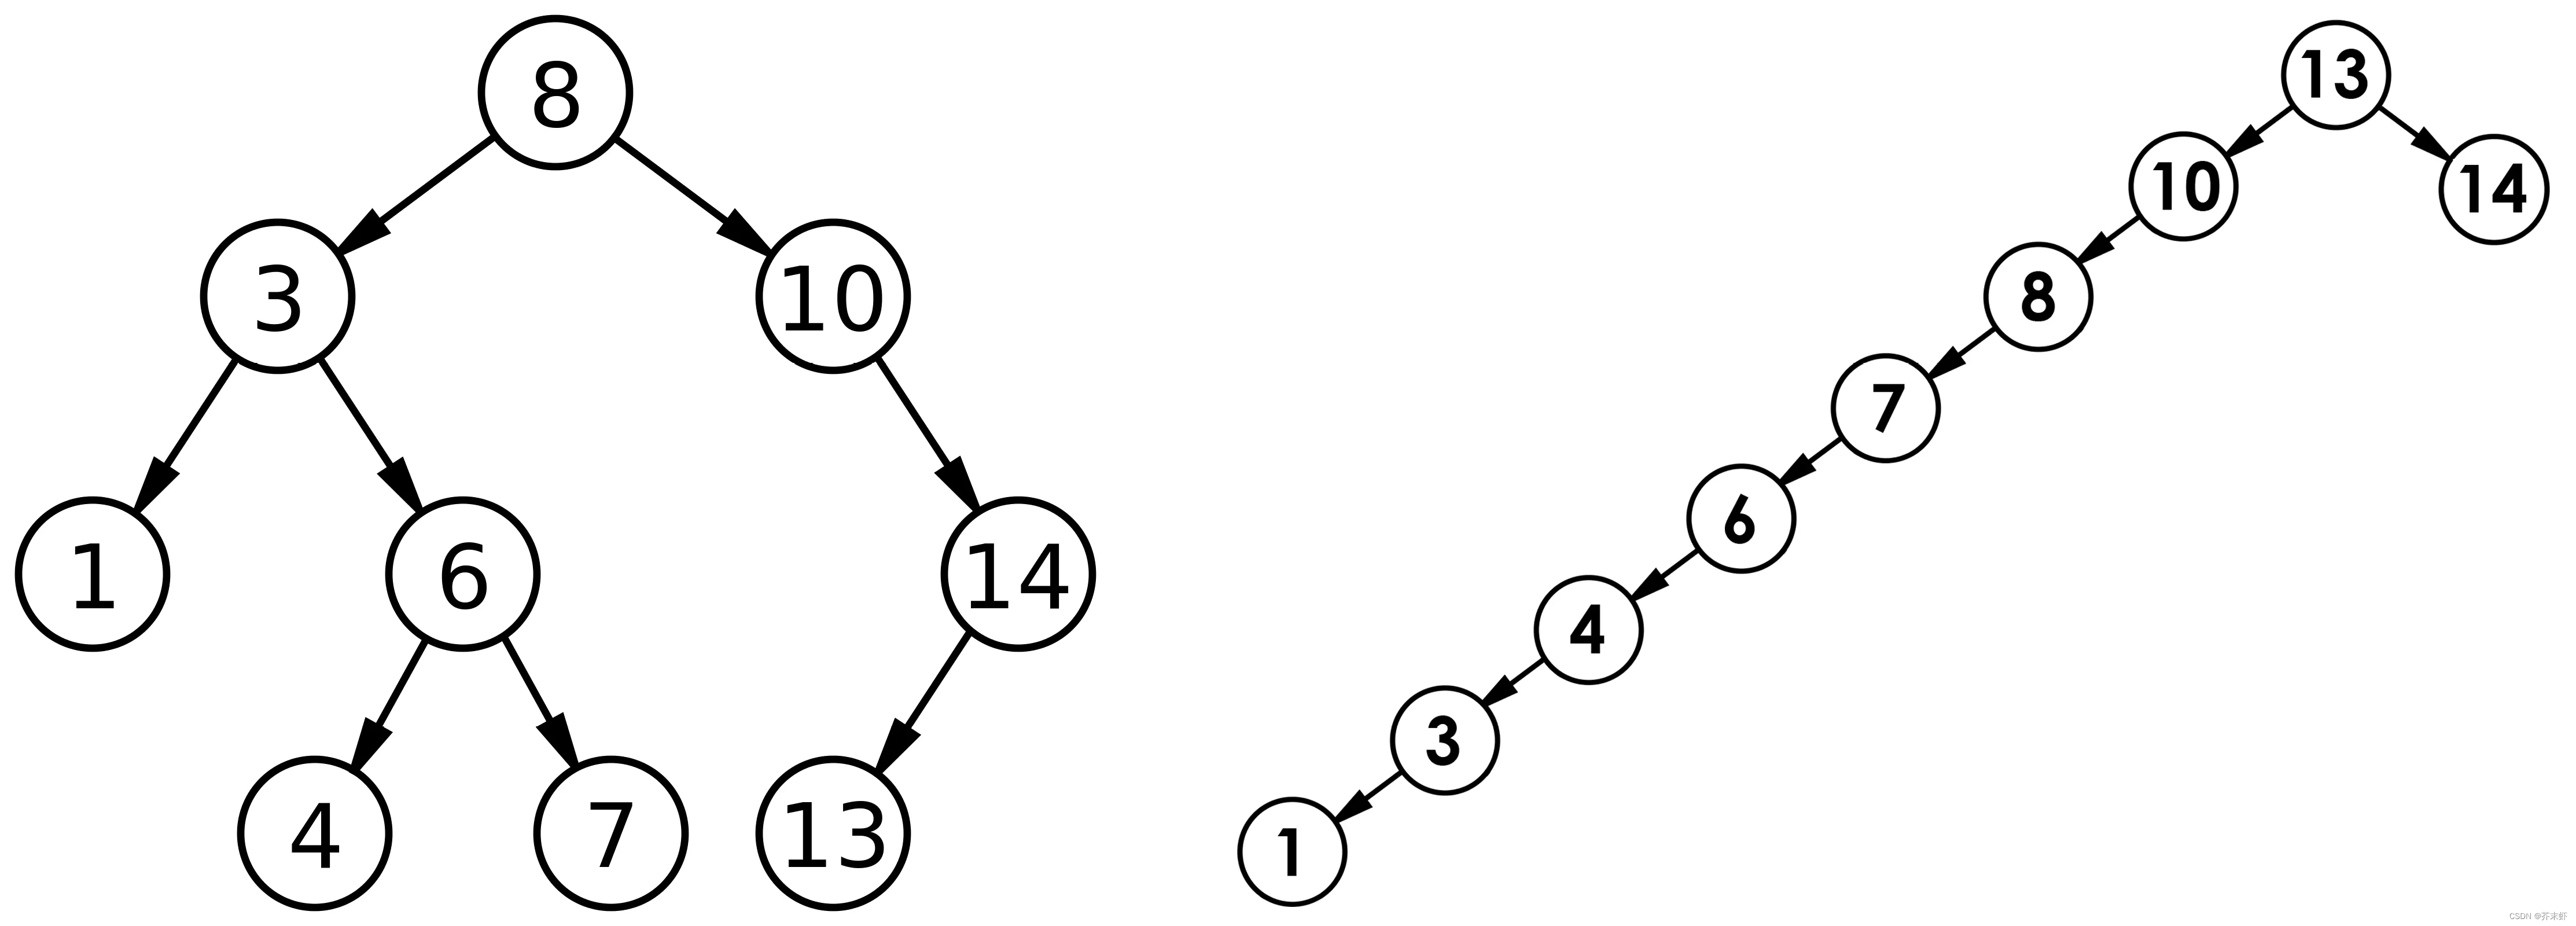 【高阶数据结构】二叉搜索树 {概念；实现：核心结构，增删查，默认成员函数；应用：K模型和KV模型；性能分析；相关练习}